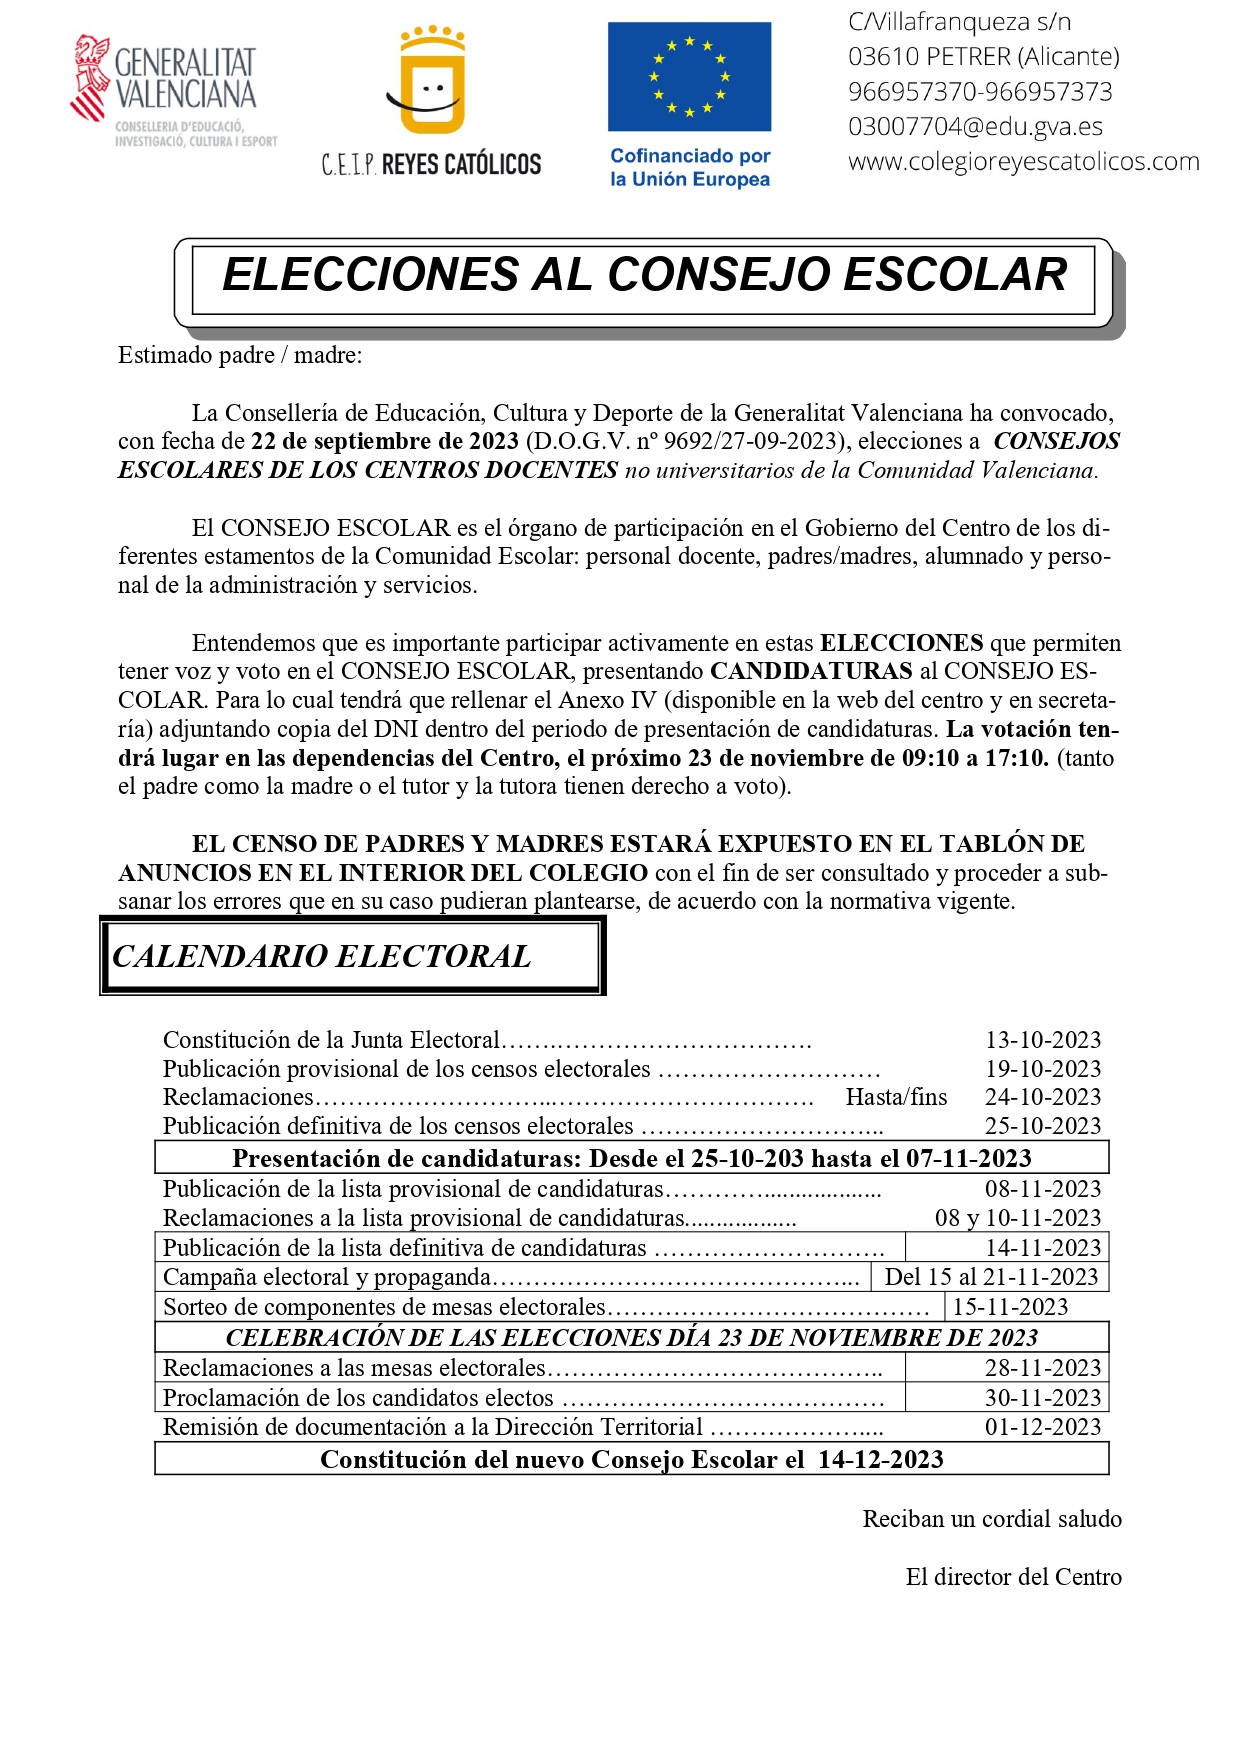 CIRCULAR 1 ELECCIONES CONSEJO ESCOLAR 2023_page-0001